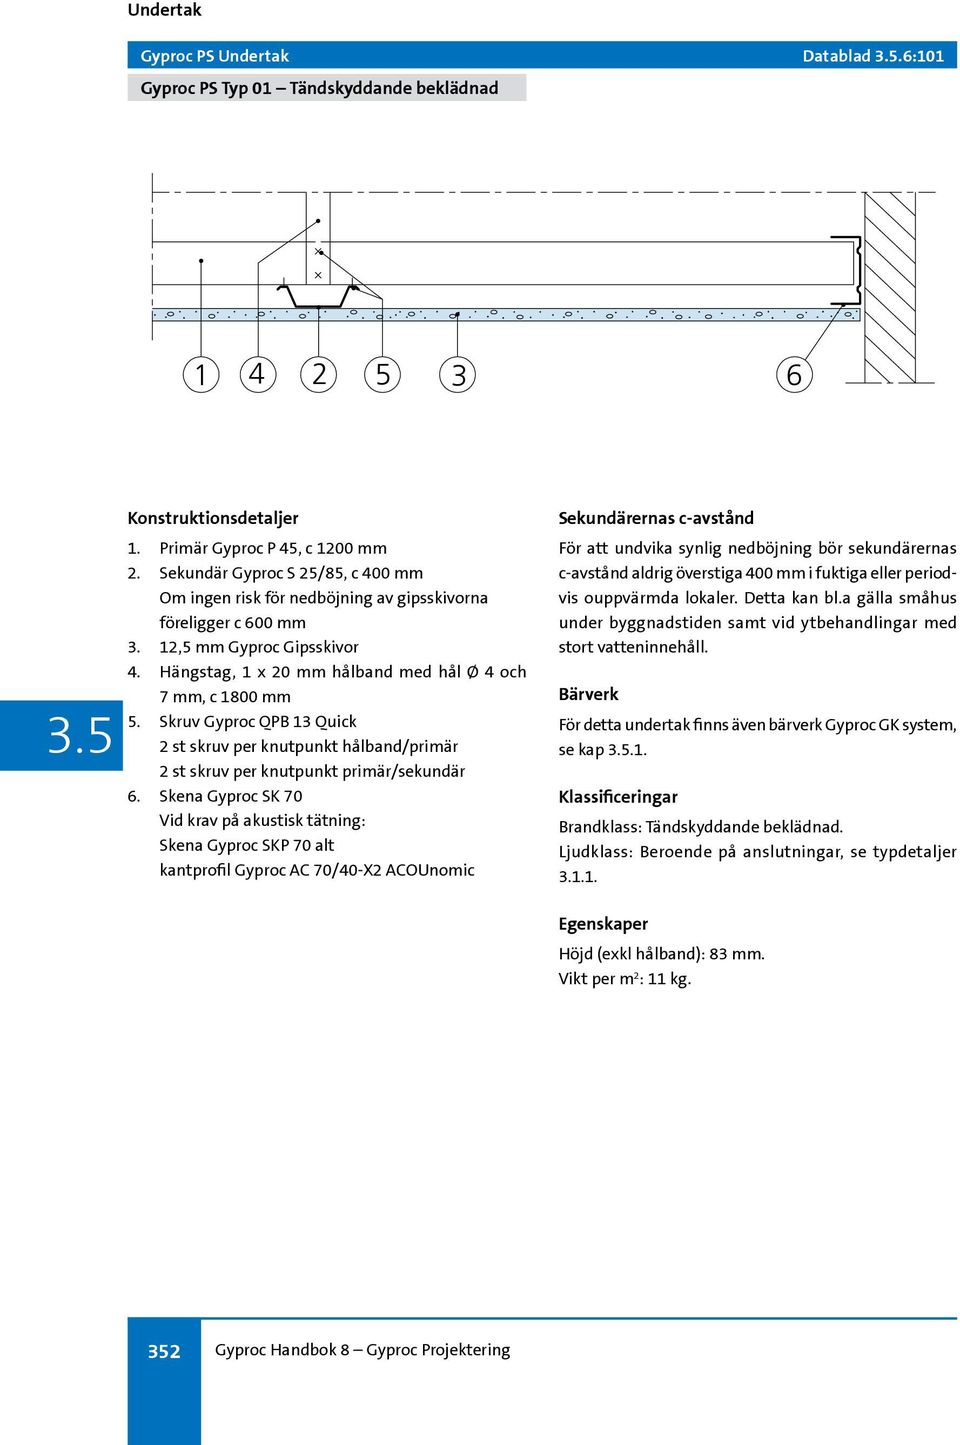 Skruv Gyproc QPB 13 Quick 2 st skruv per knutpunkt hålband/primär 2 st skruv per knutpunkt primär/sekundär 6.